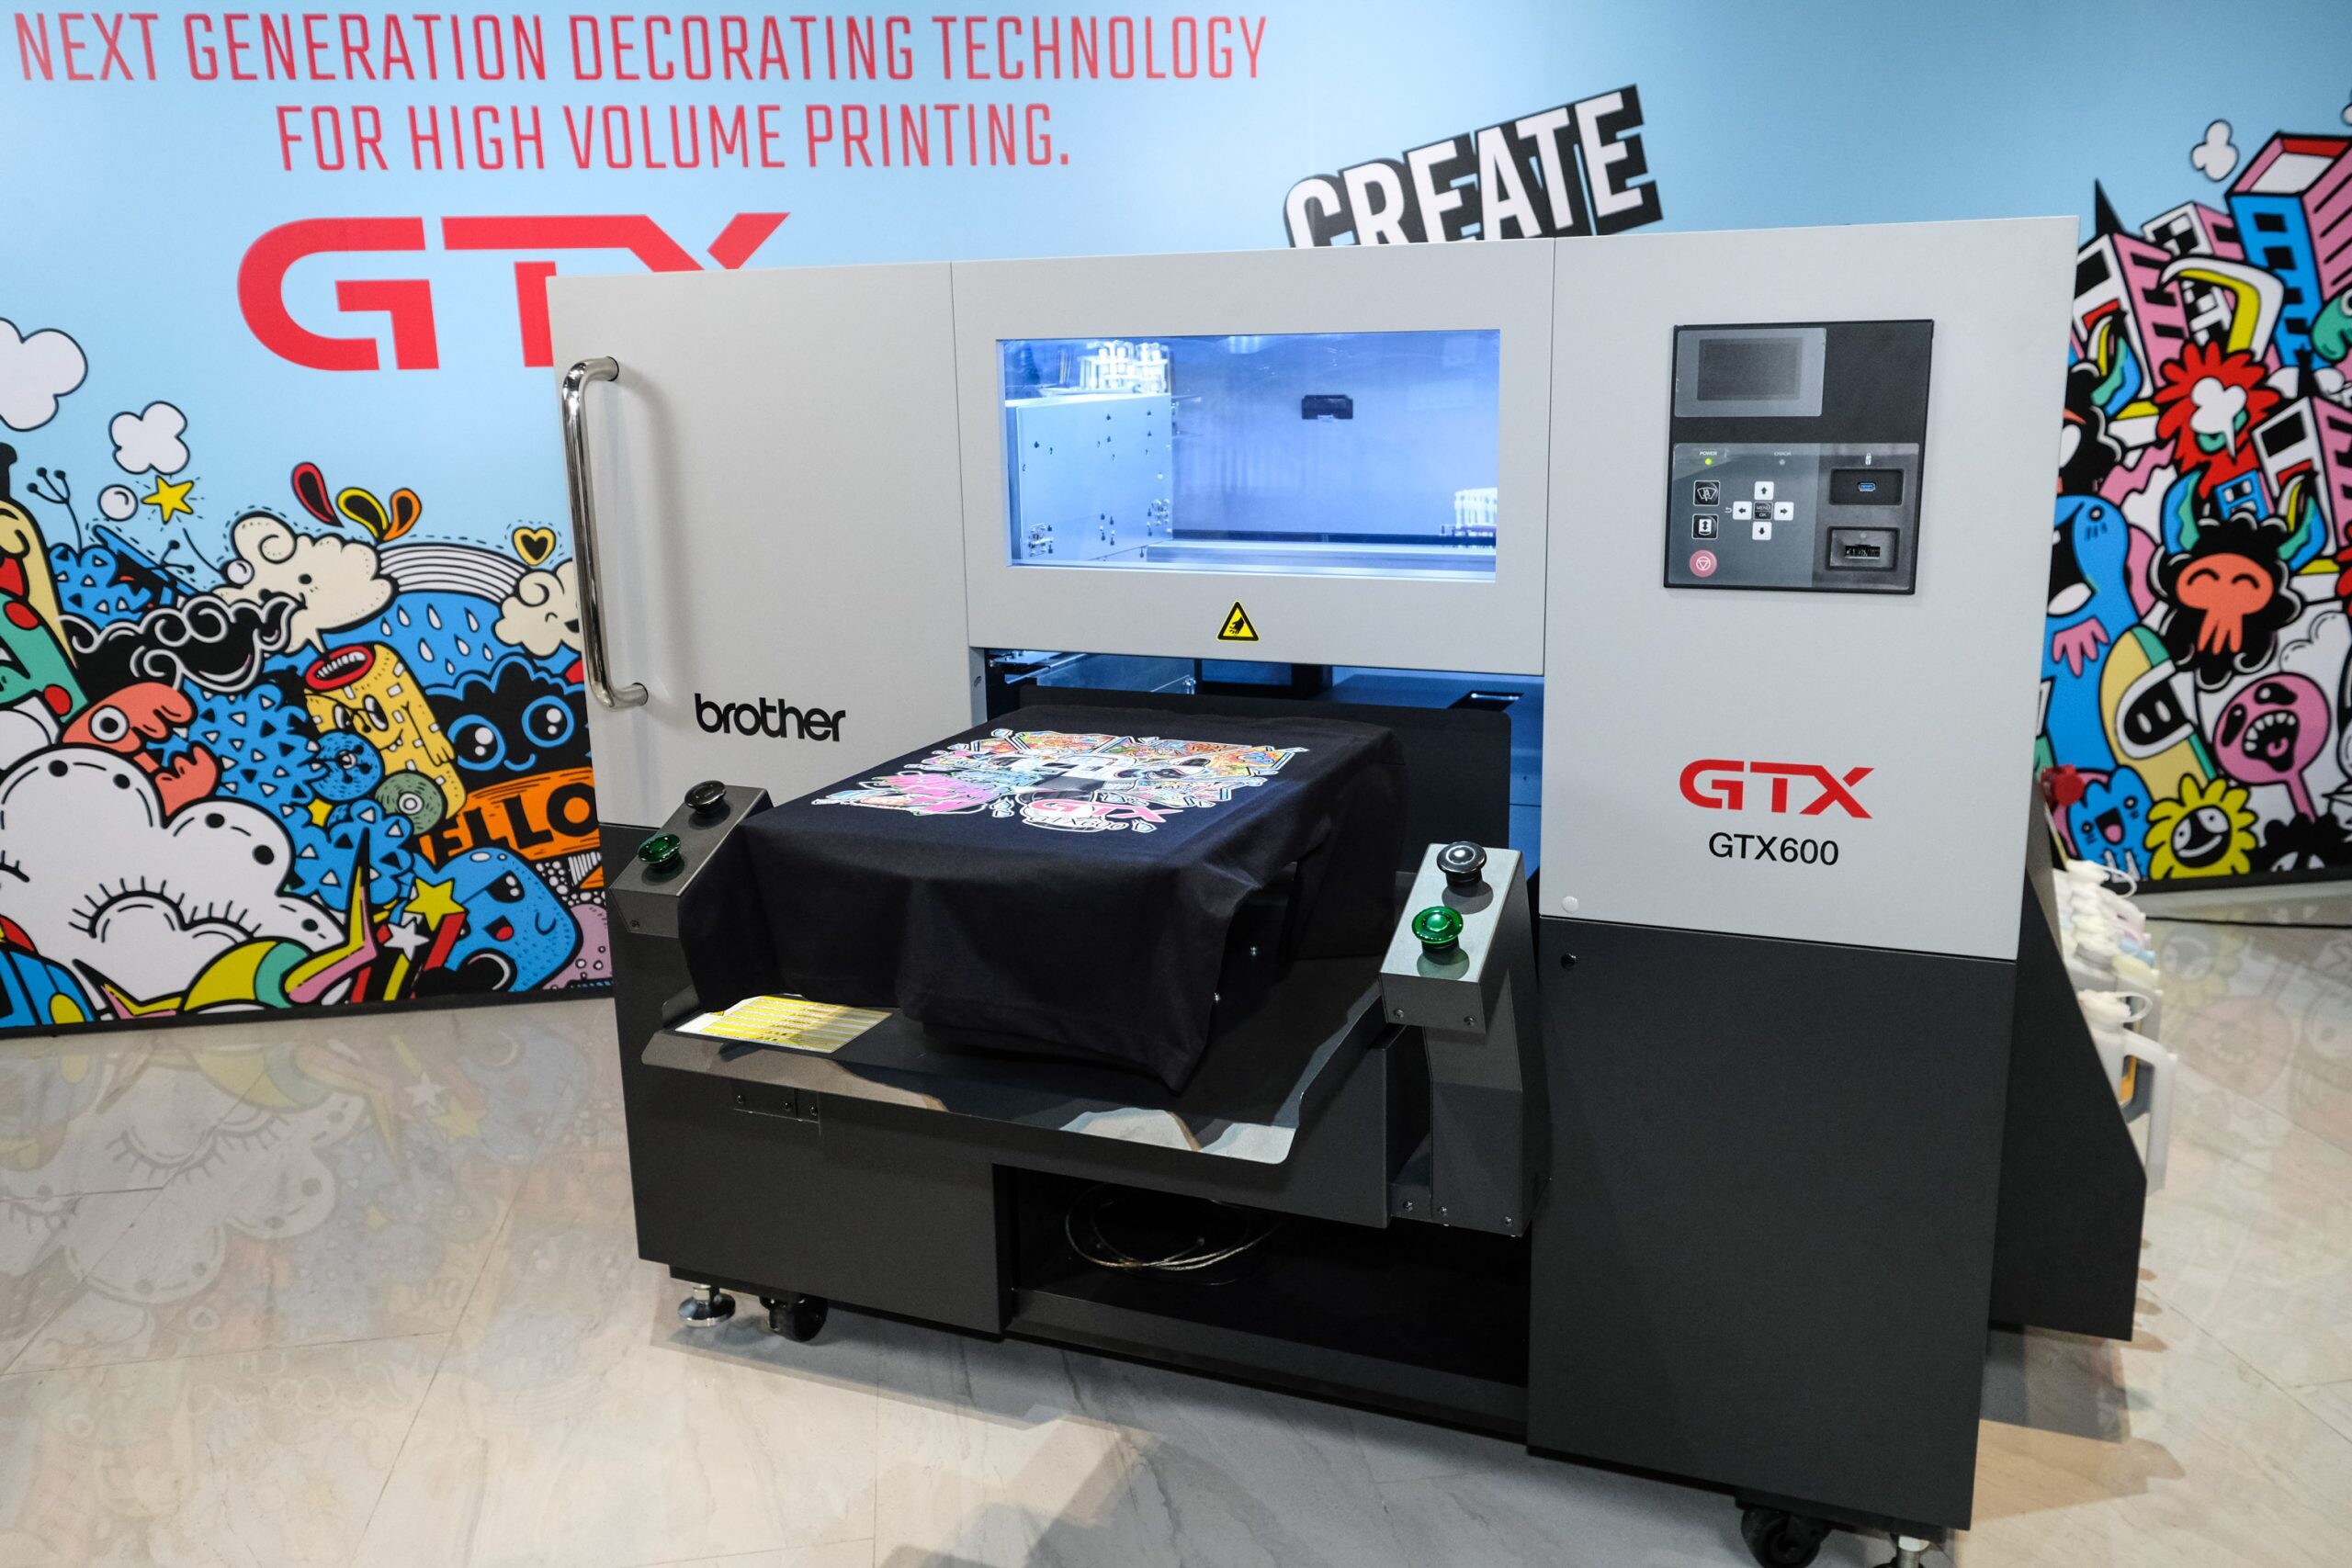 บราเดอร์ นำเข้า 'GTX600' สุดยอดเครื่องพิมพ์ผ้าอุตสาหกรรมระบบดิจิทัลจากญี่ปุ่น หลังกวาดยอดขายในไทยจนครองส่วนแบ่งการตลาดสูงสุด